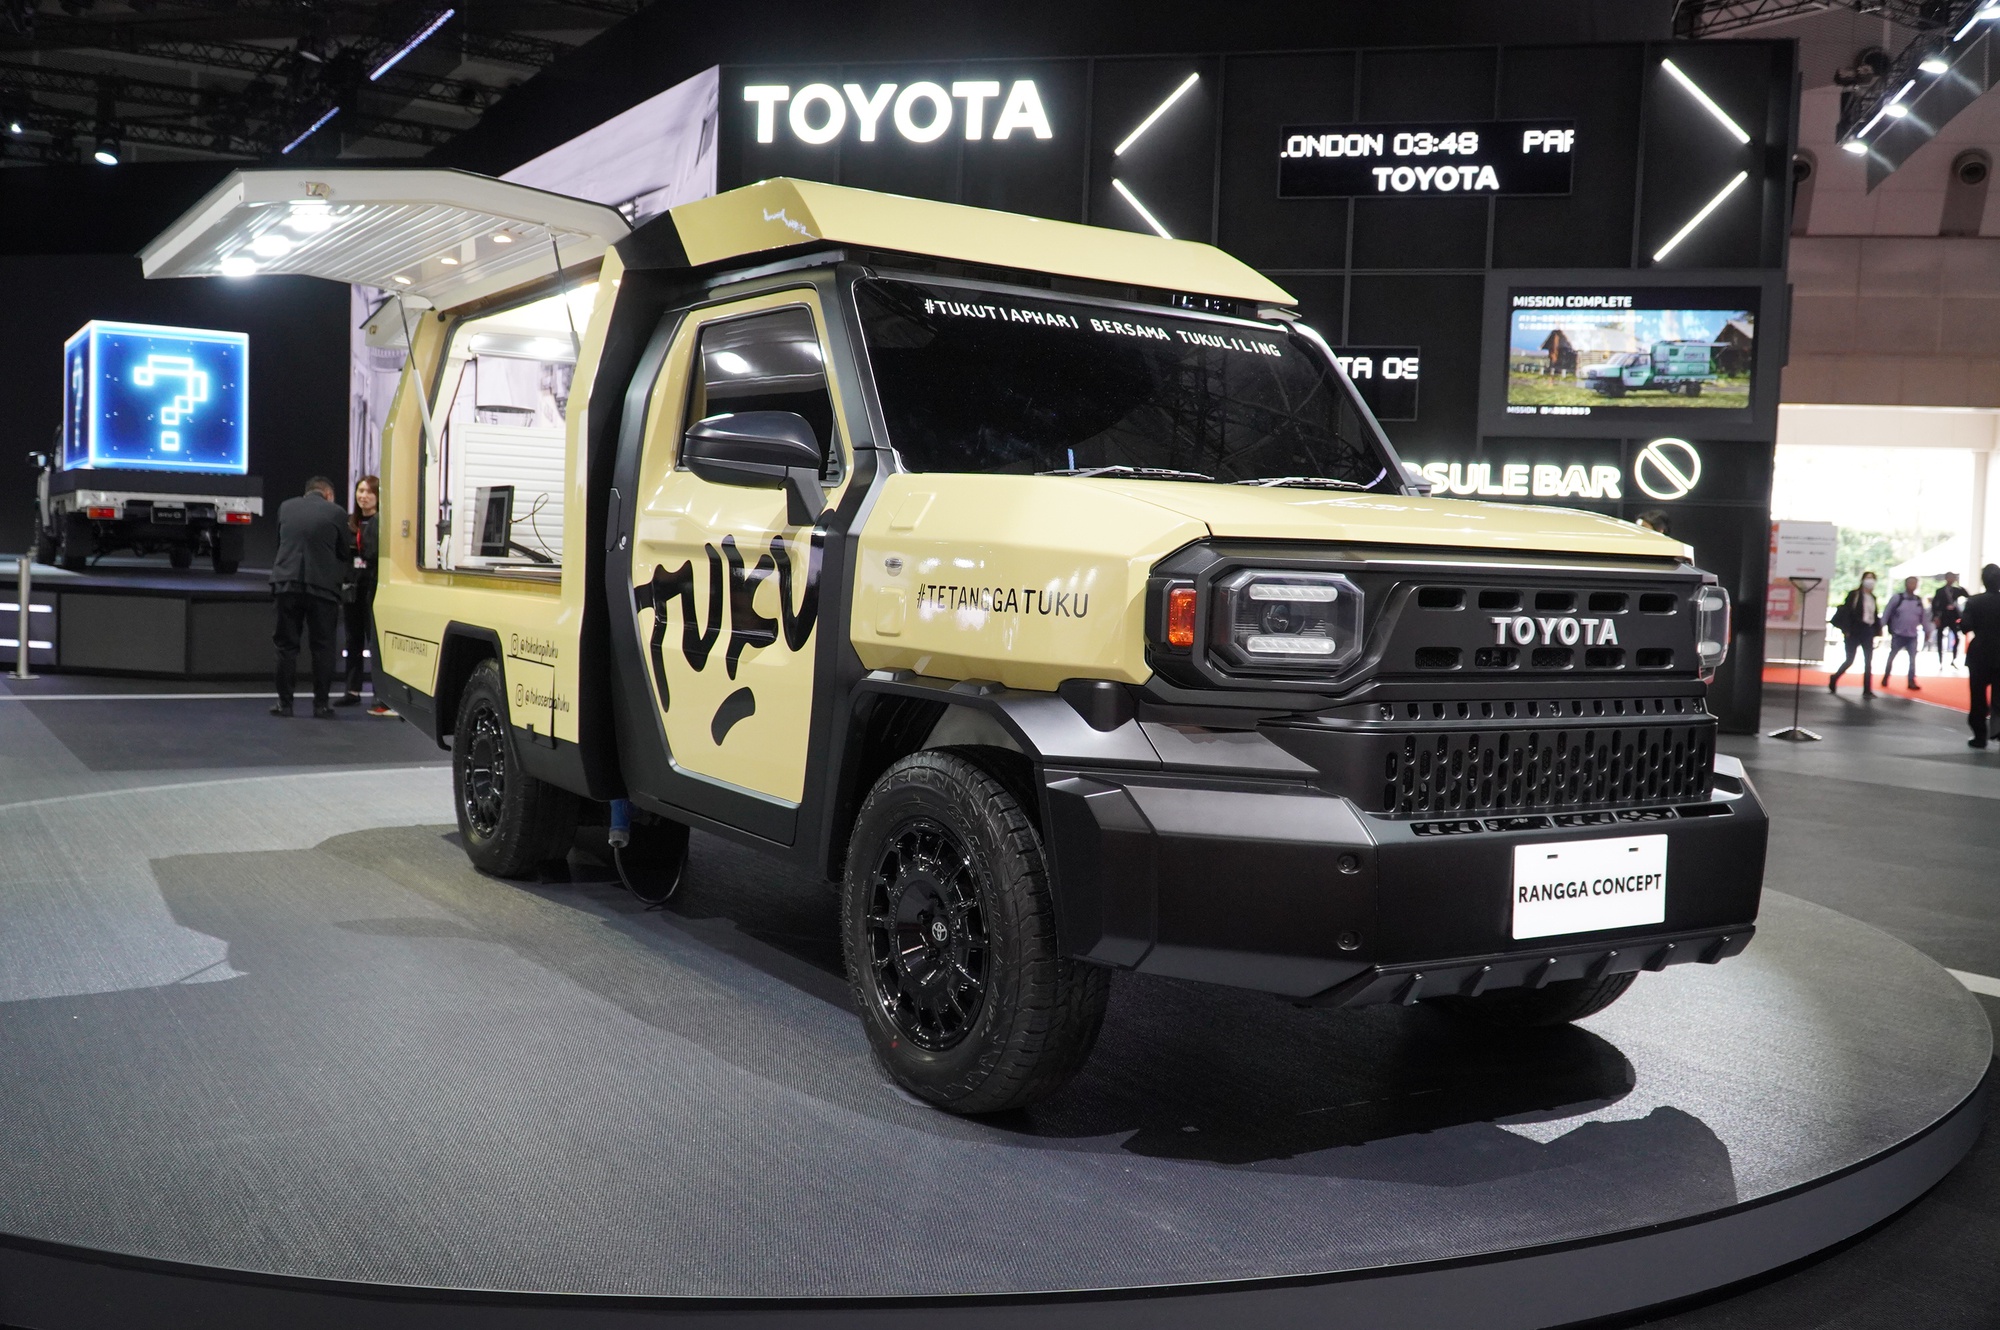 Toyota Rangga 'biến hình' như tắc kè, giá rẻ hơn Hilux   - Ảnh 1.